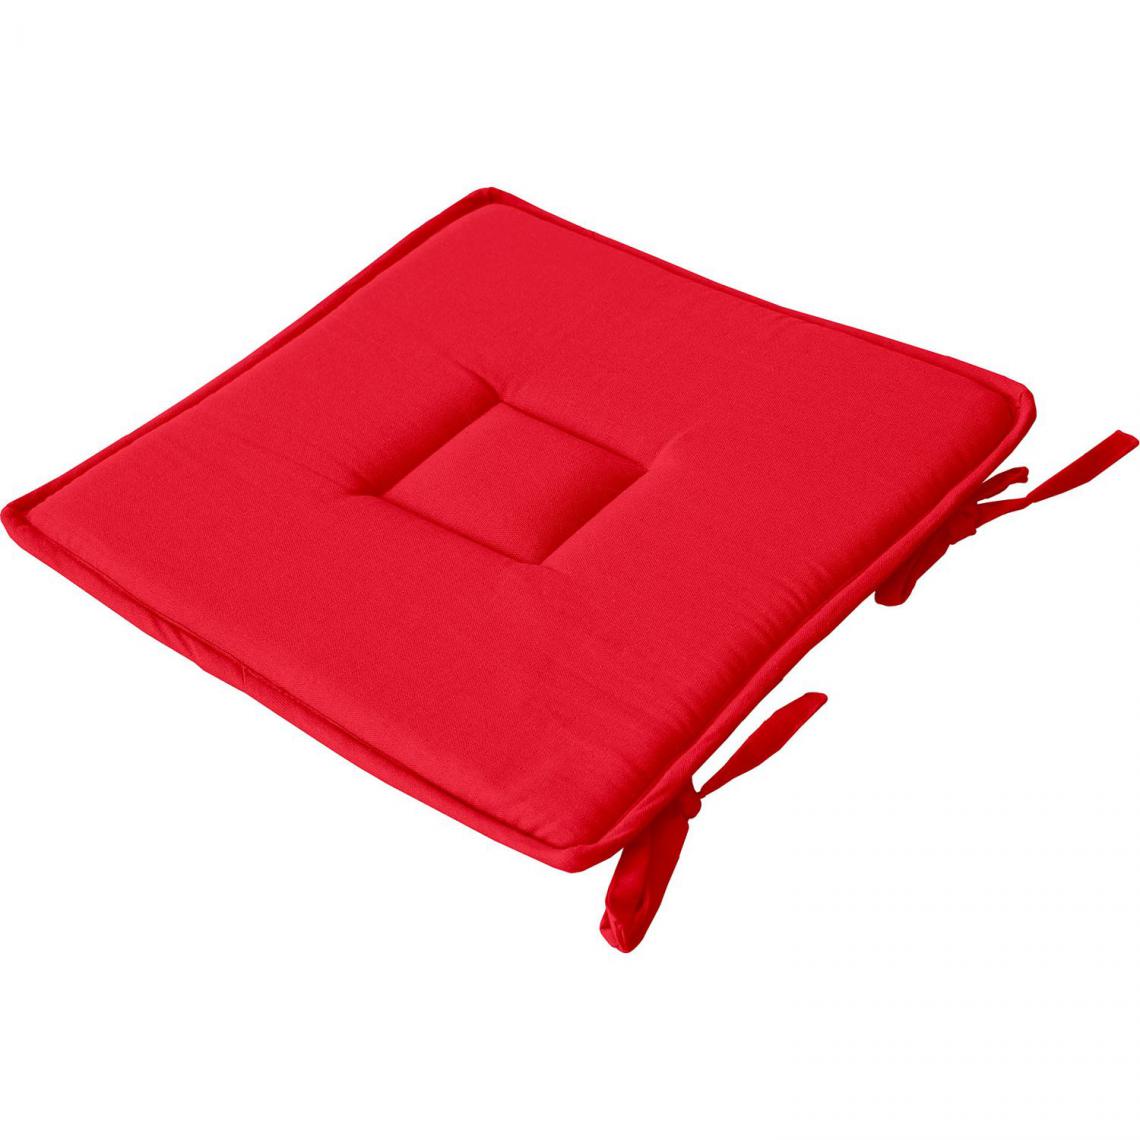 Toilinux - Galette de chaise uni effet Bachette - 40 x 40 cm - Rouge - Coussins, galettes de jardin